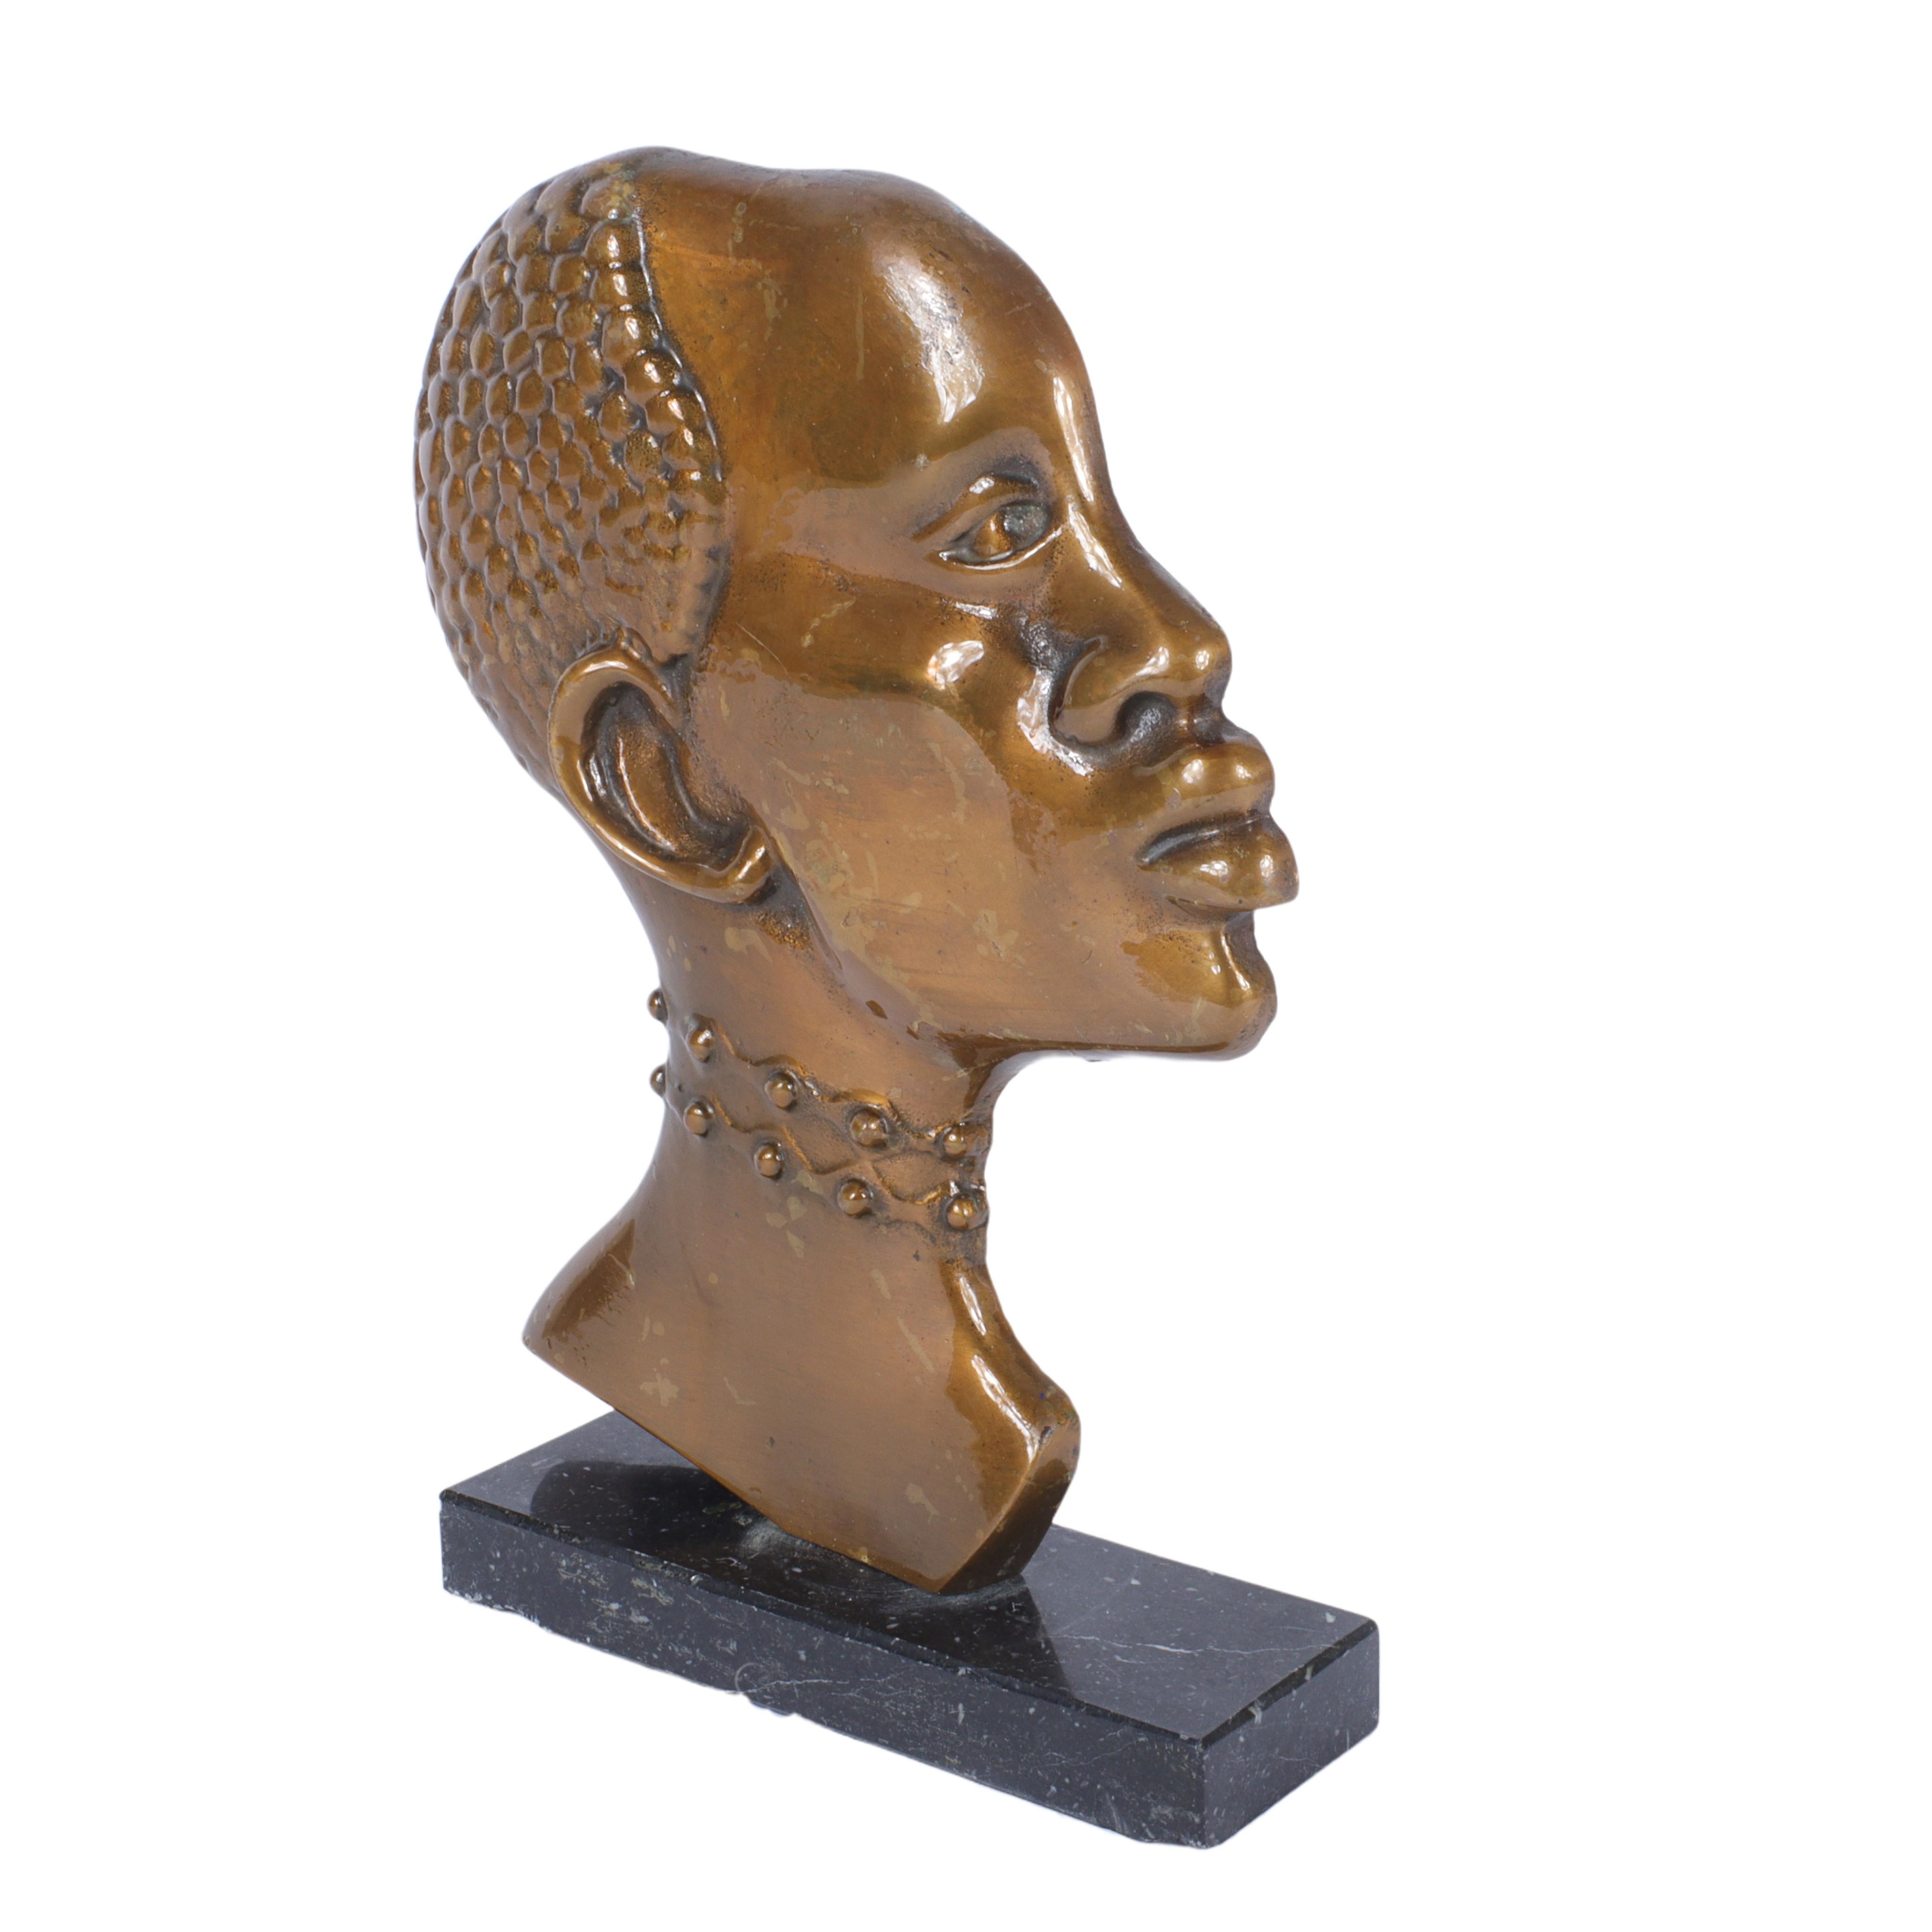 Austrian Art Deco bronze African woman bust manner of Franz Hagenauer, Wiener Werkstatte, 1930s. by Franz Hagenauer, 1930s